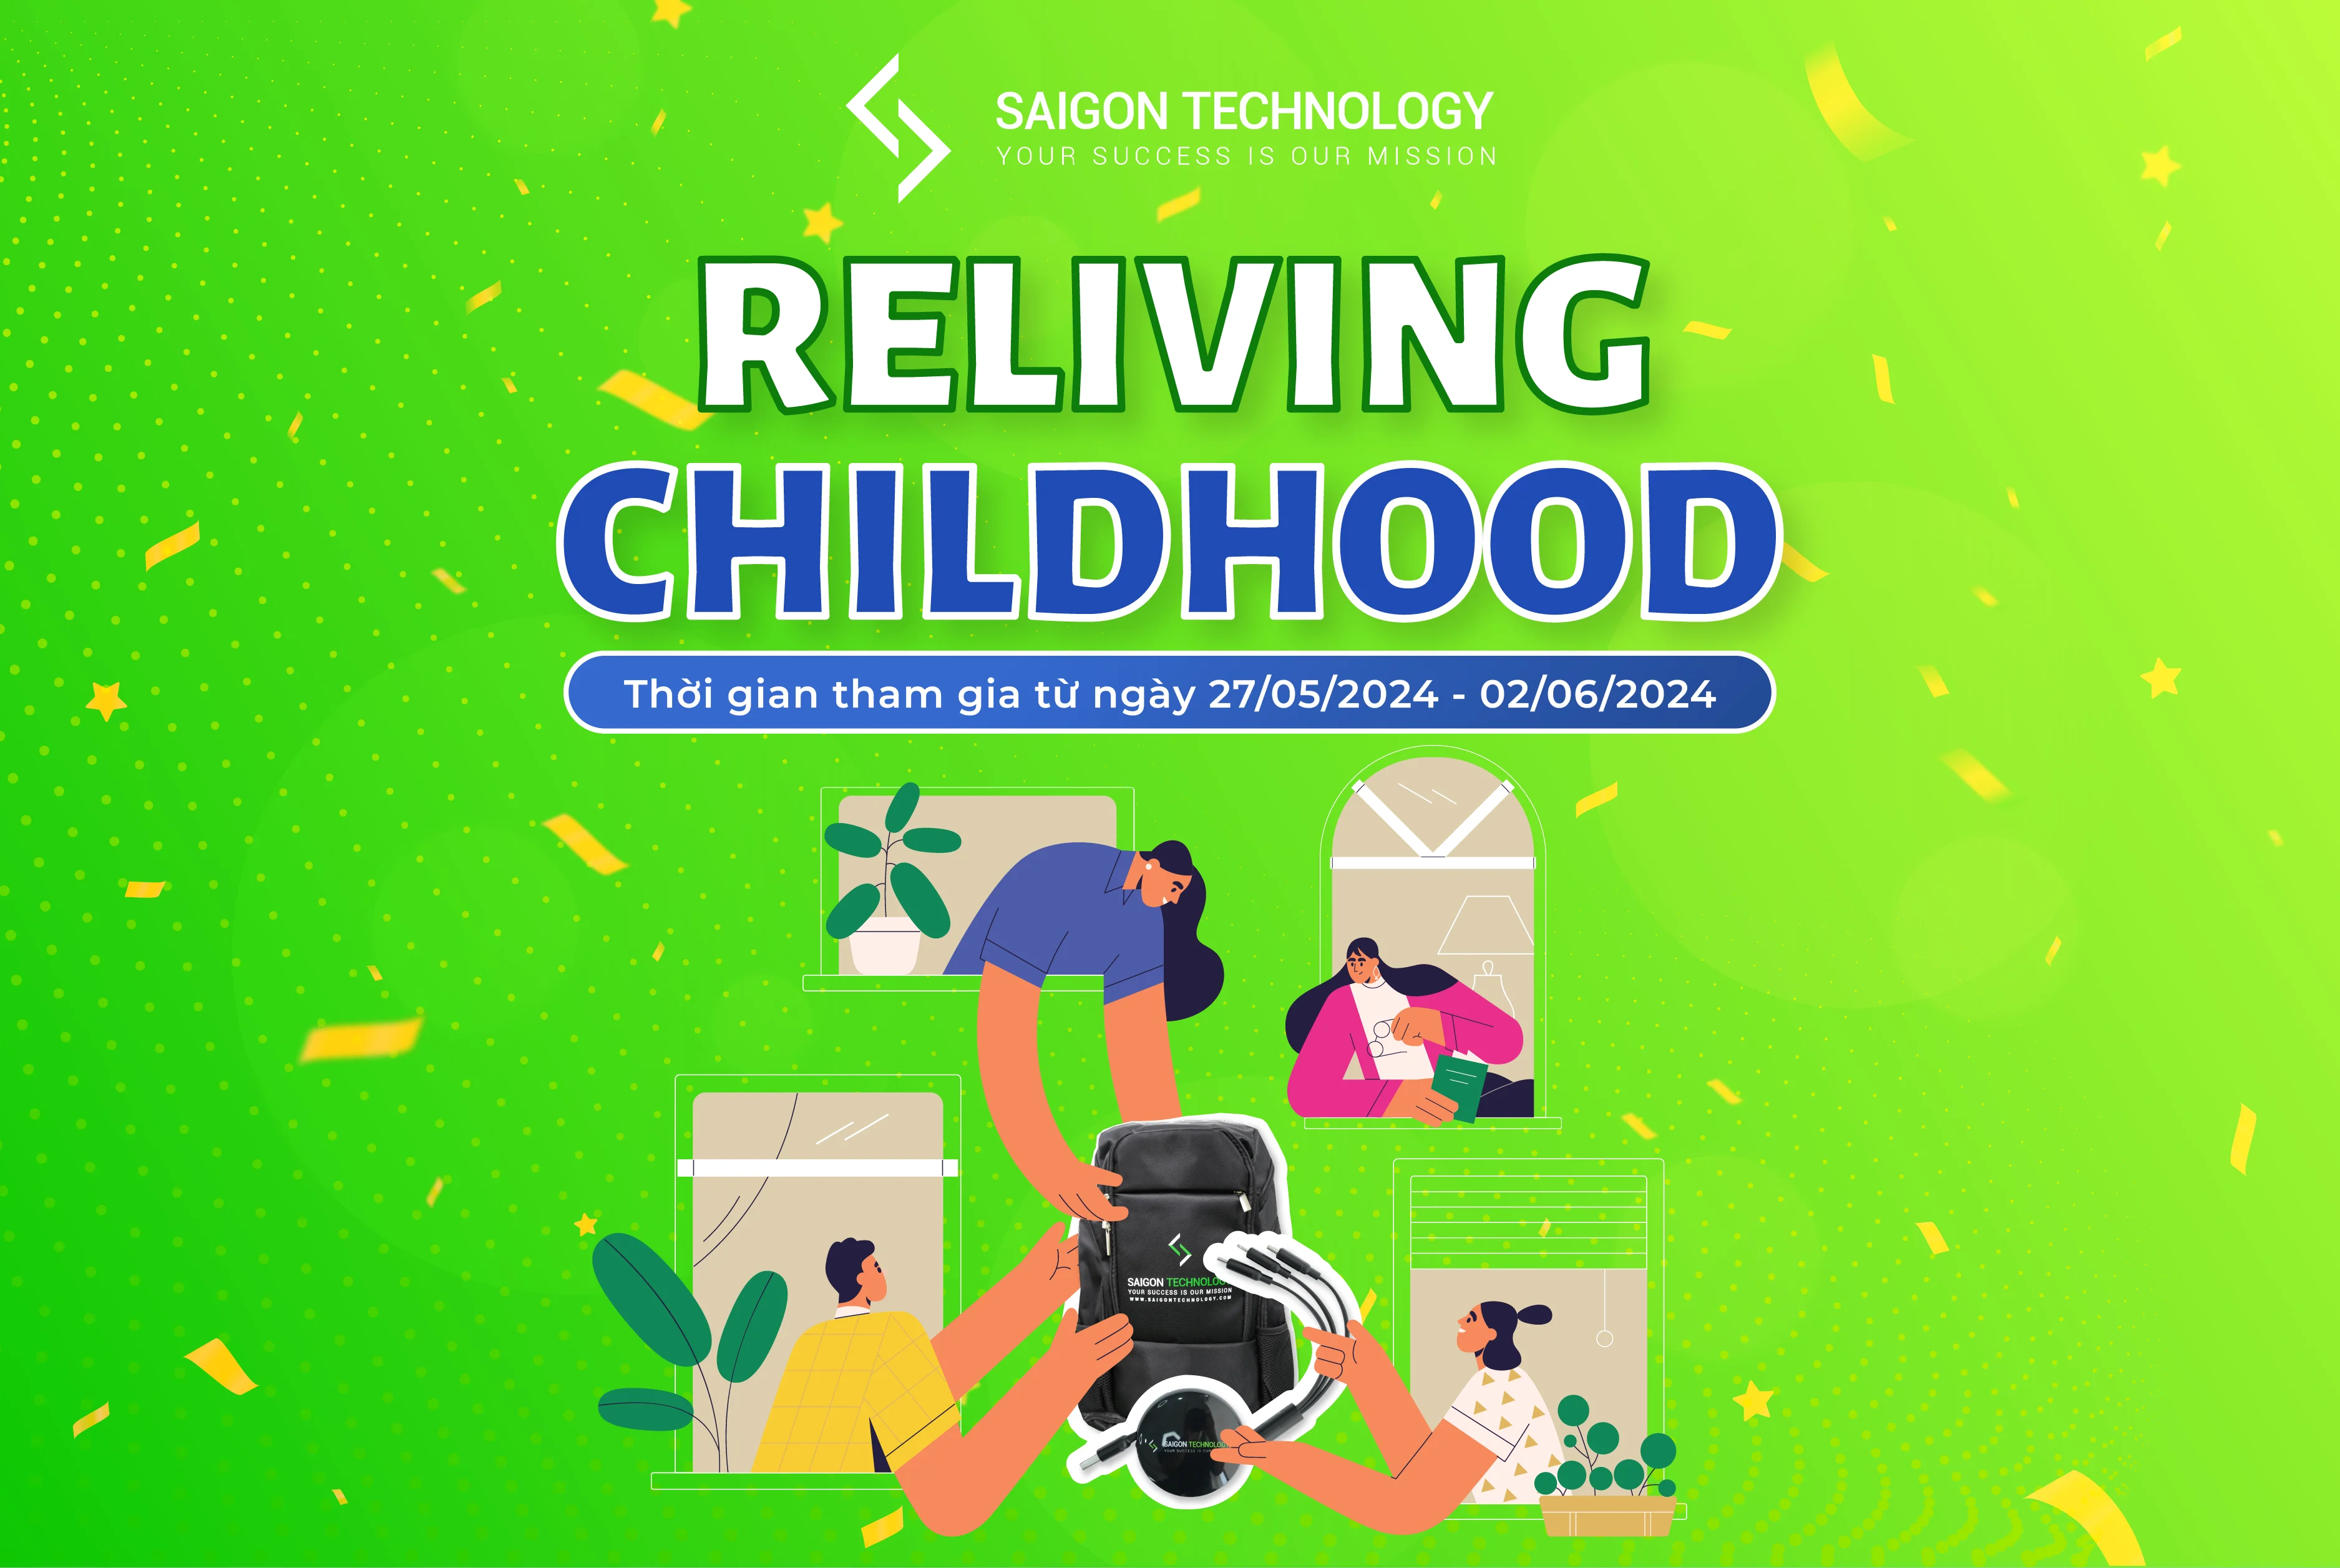 Quay về tuổi thơ không bạn eh, về cùng Minigame "RELIVING CHILDHOOD" thôi nào!